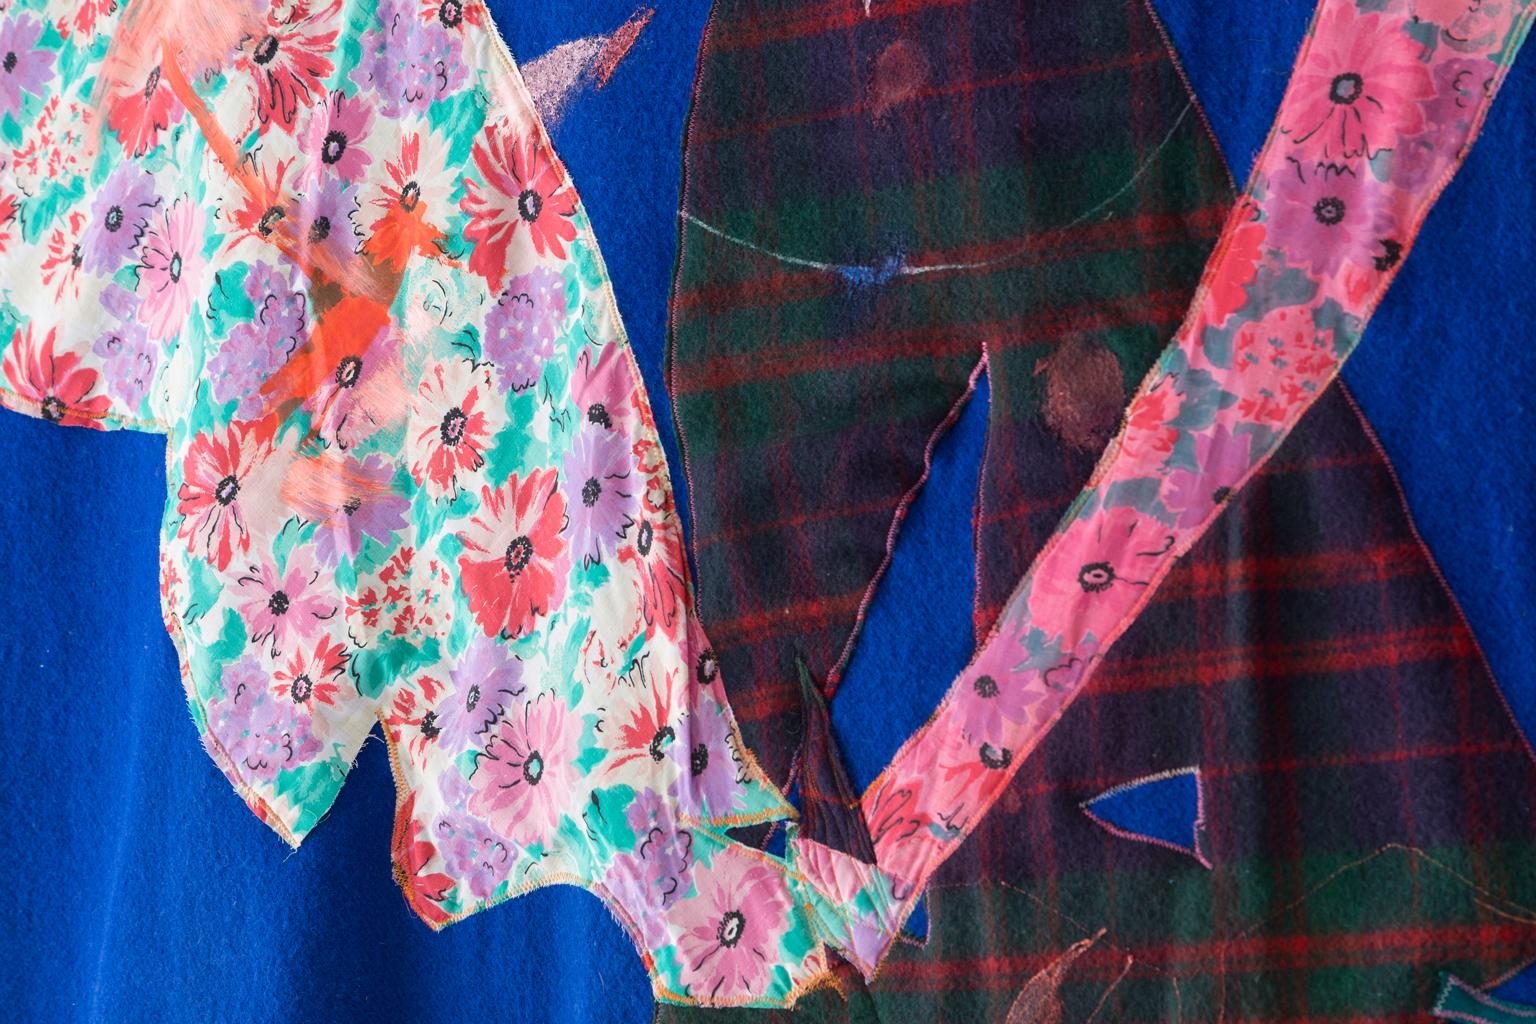 Dans le cadre du Blanket Project, Naomi Clark crée ce qu'elle appelle des Quilt Paintings. Elle redonne vie à de vieilles couvertures de camping en laine et en coton récupérées sur EBay, dans des marchés aux puces et des ventes de garage. Naomi